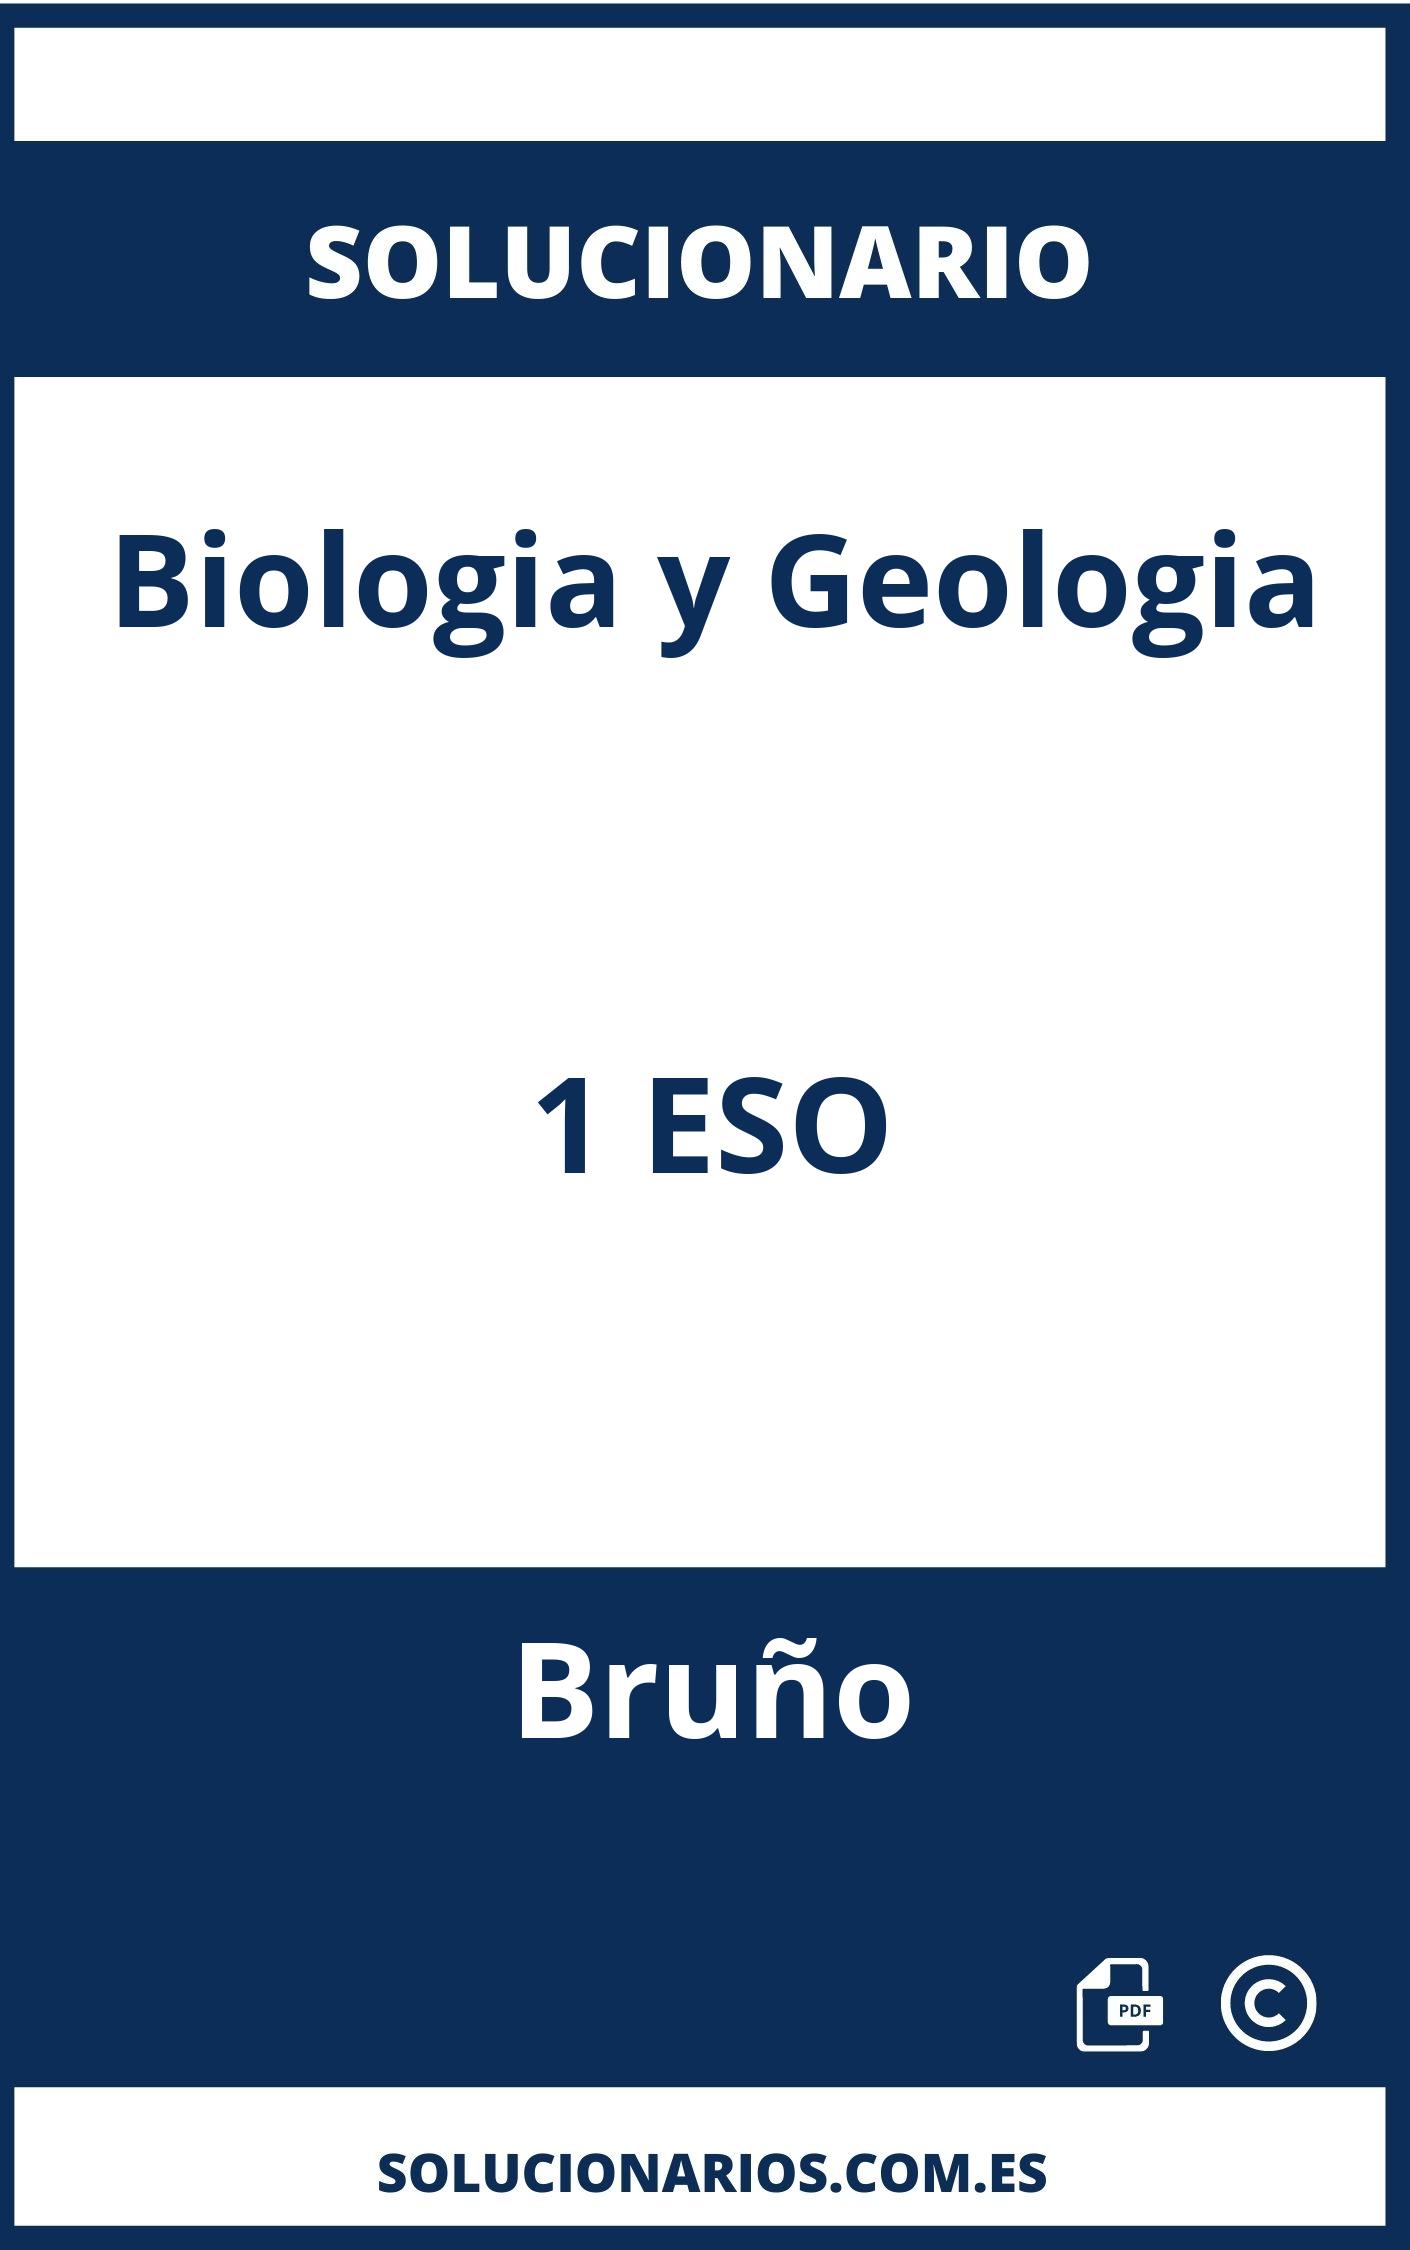 Solucionario Biologia y Geologia 1 ESO Bruño